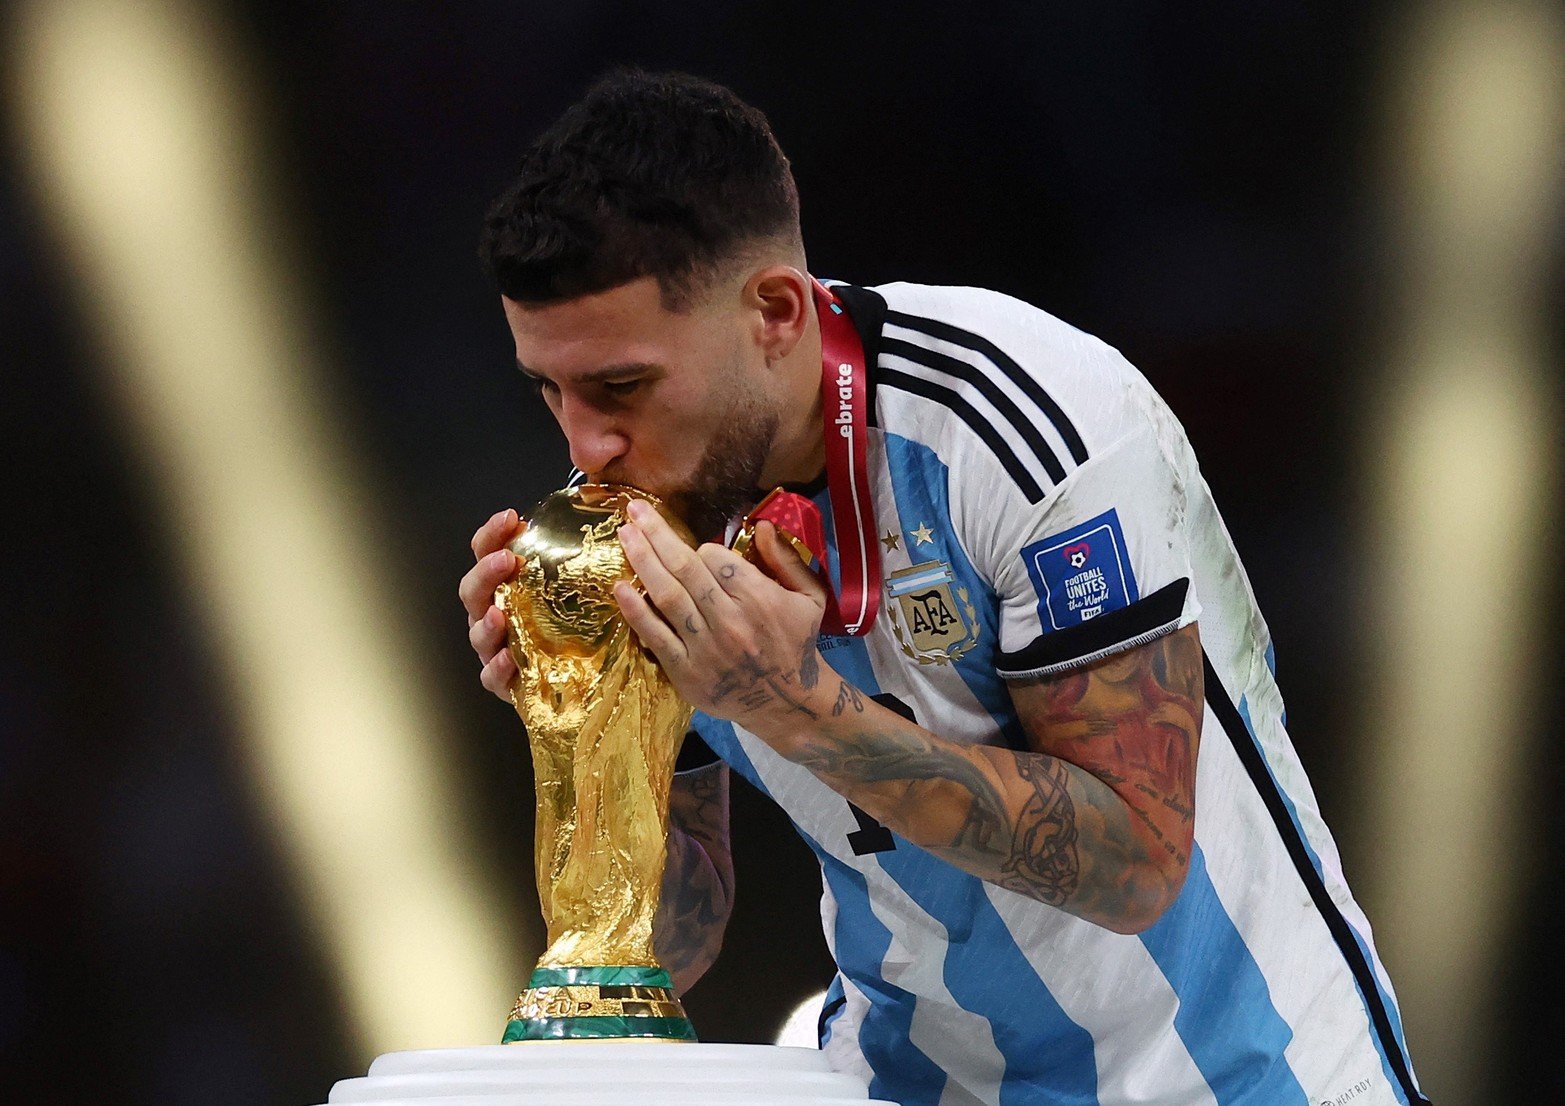 Argentina se consagró campeón del mundo en fútbol. Luego de 36 años. En 42 partidos, la selección perdió un solo partido. Fue el primero del mundial frente a Arabia Saudita.